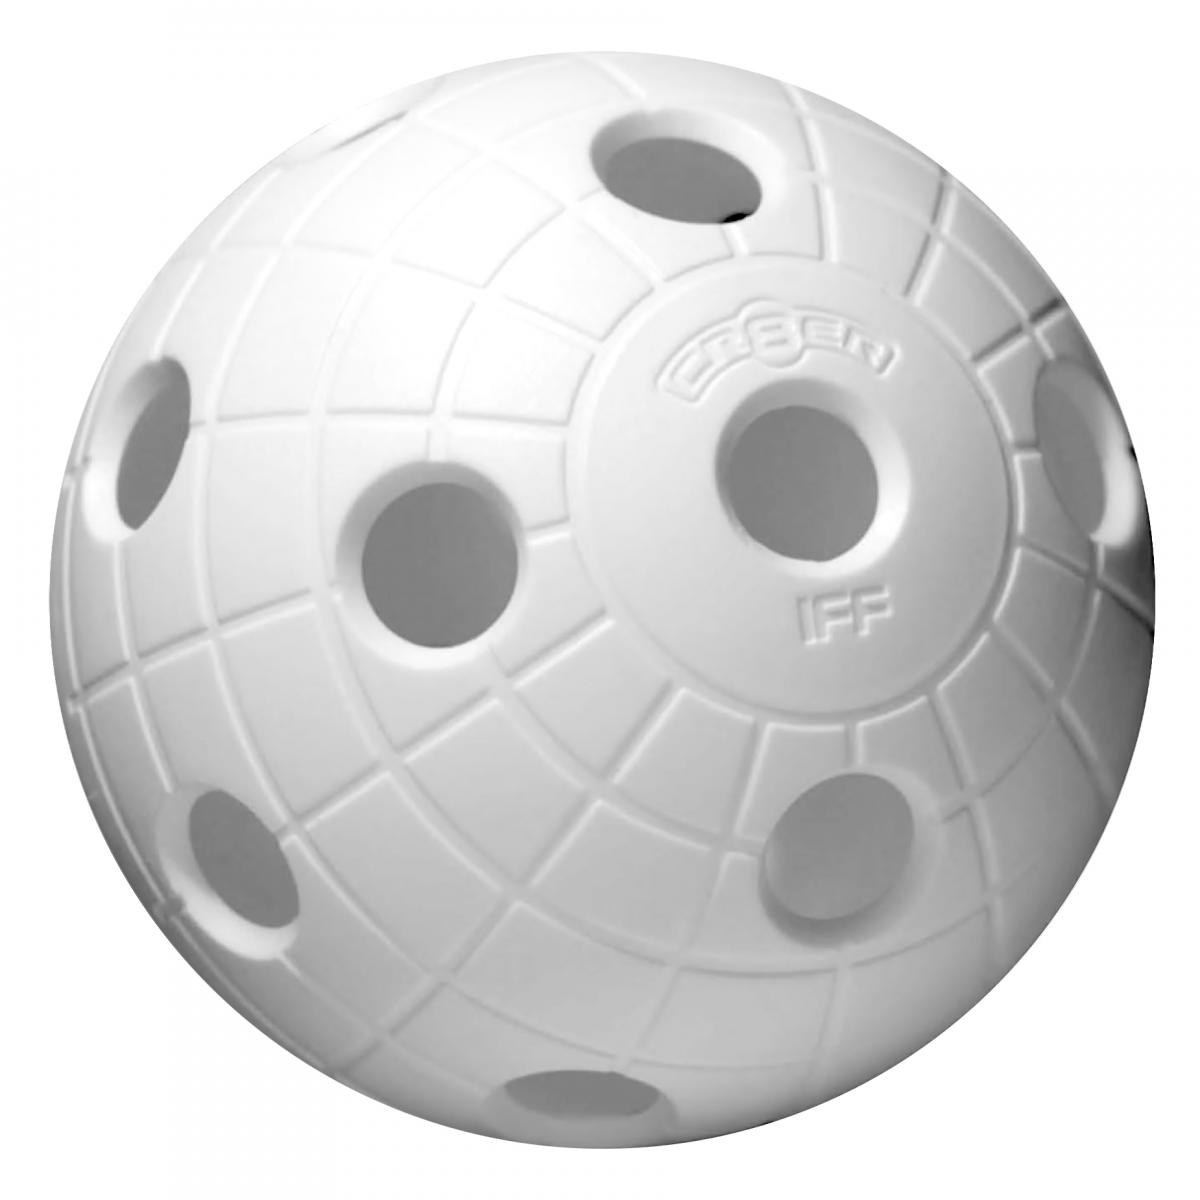 Unihoc Match ball CRATER innebandyball